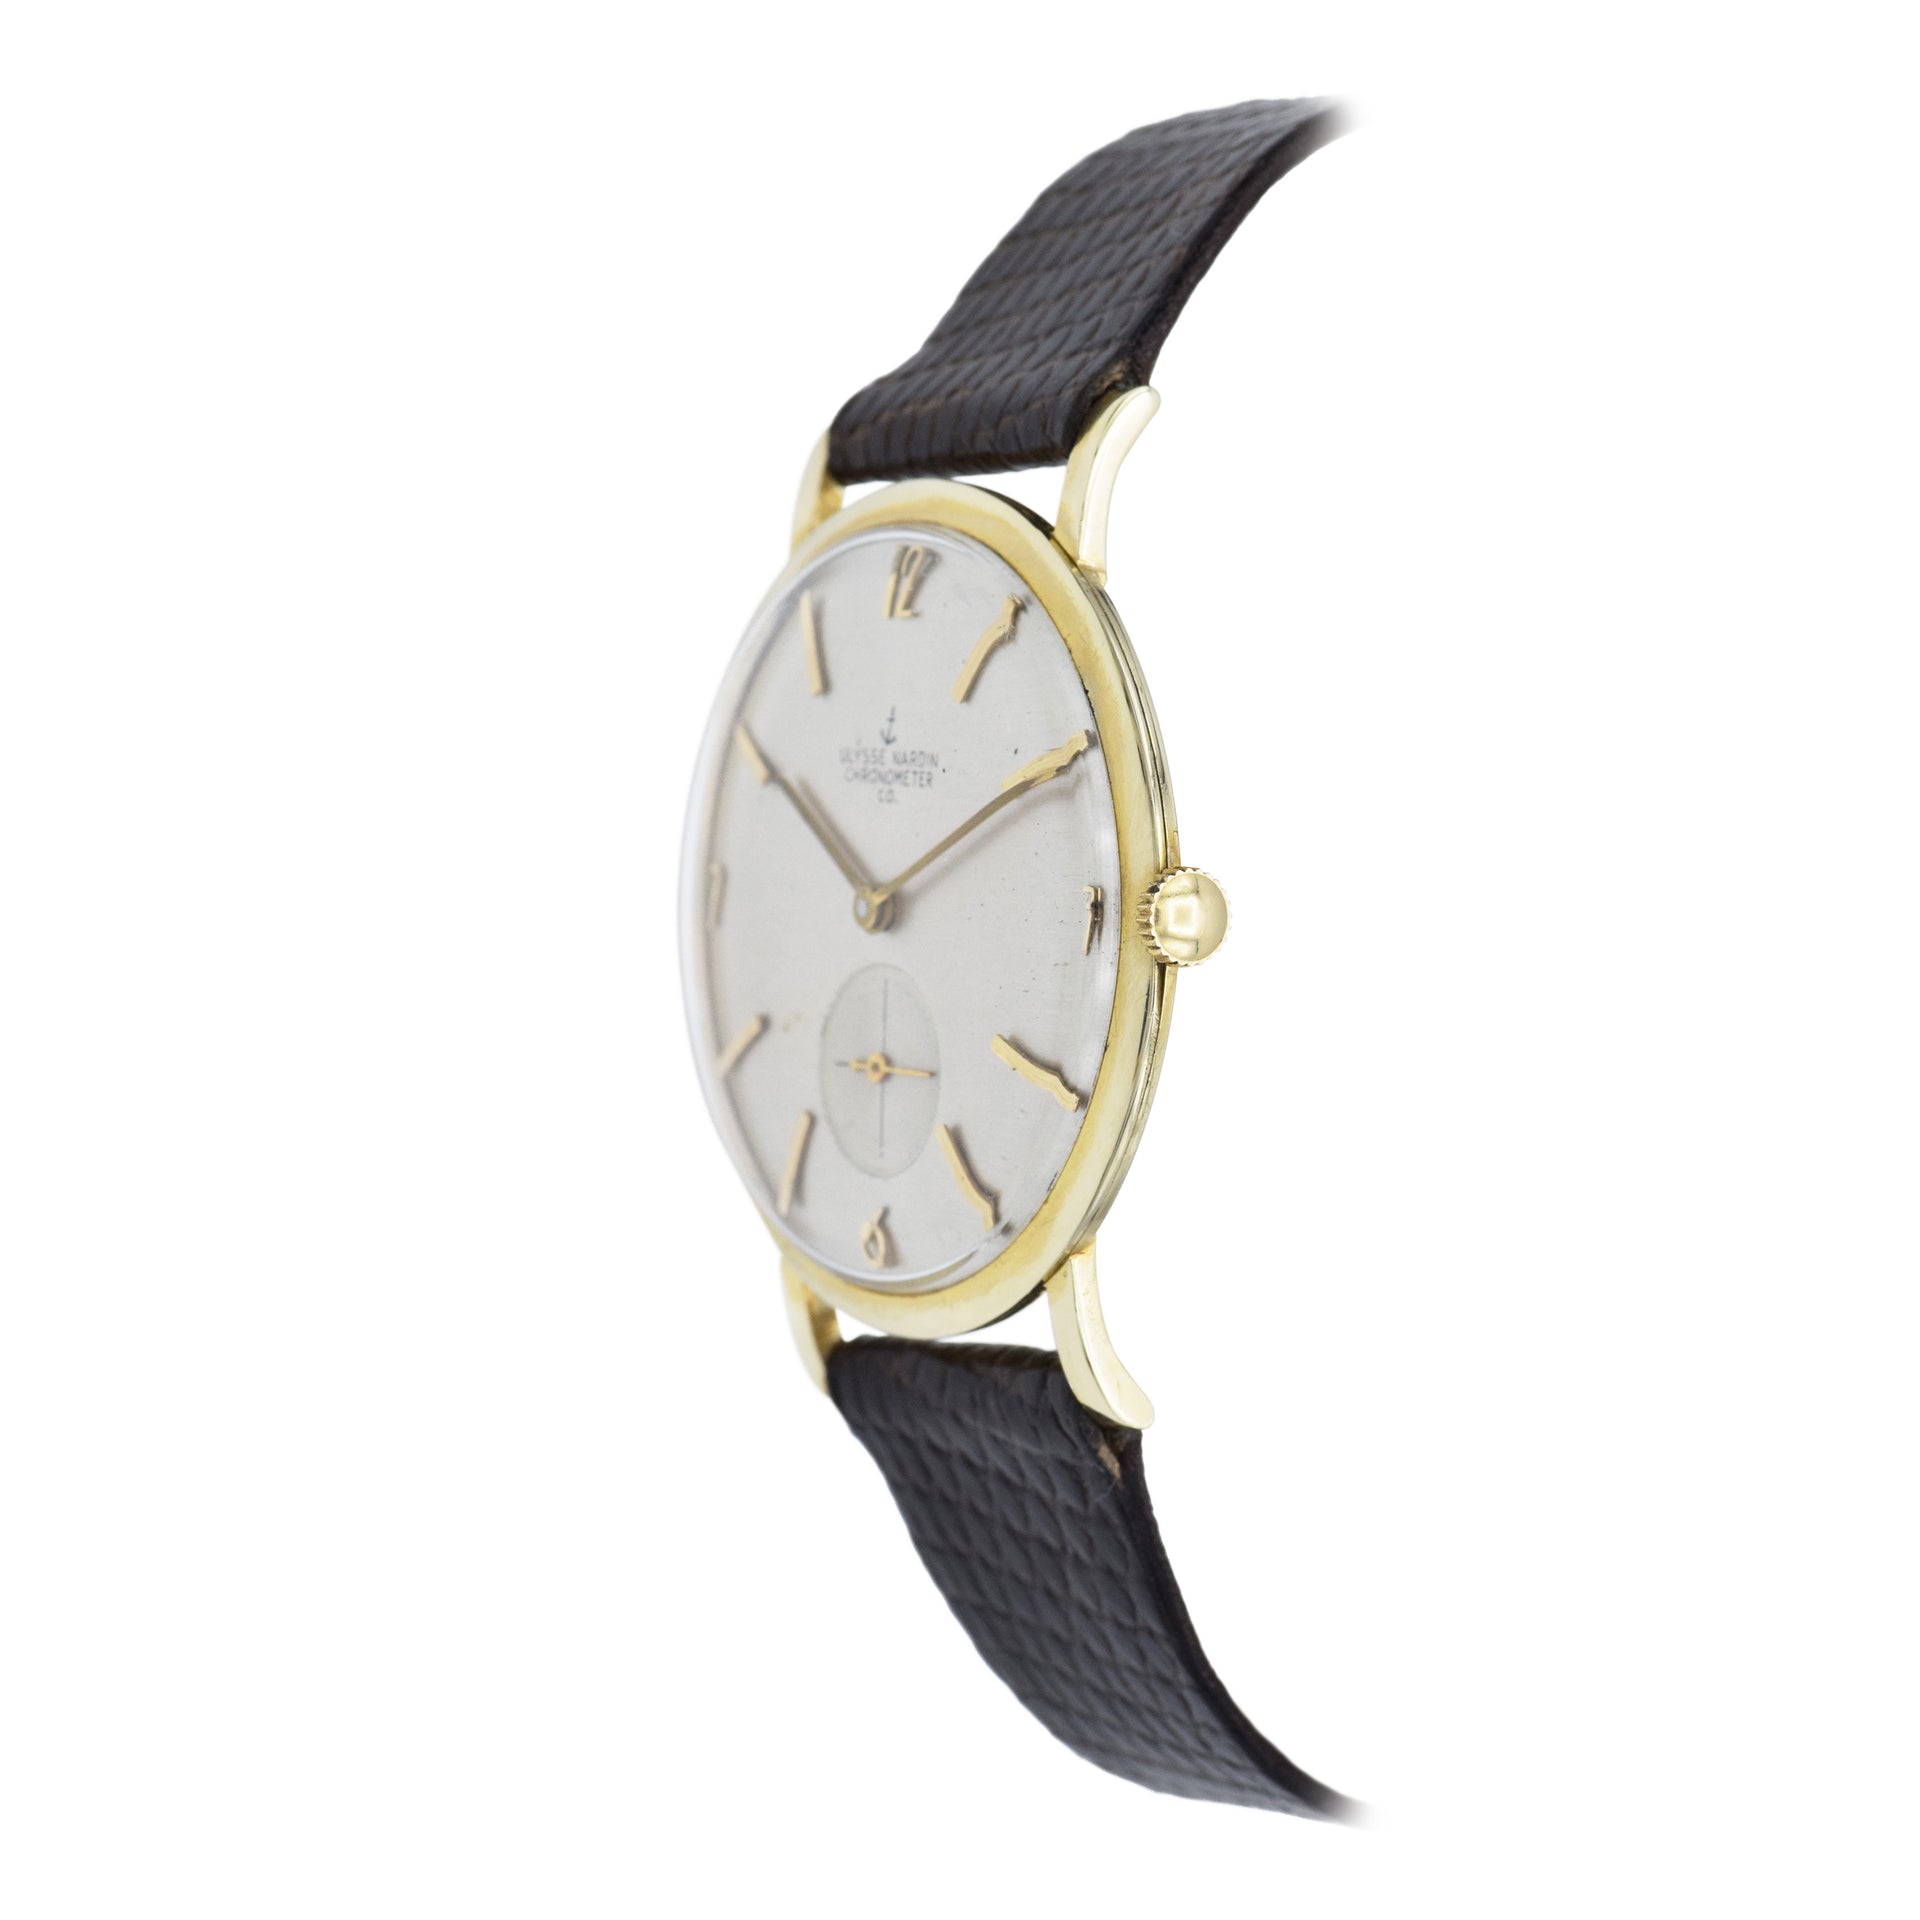 Vintage 1950s Ulysse Nardin Chronometer Watch